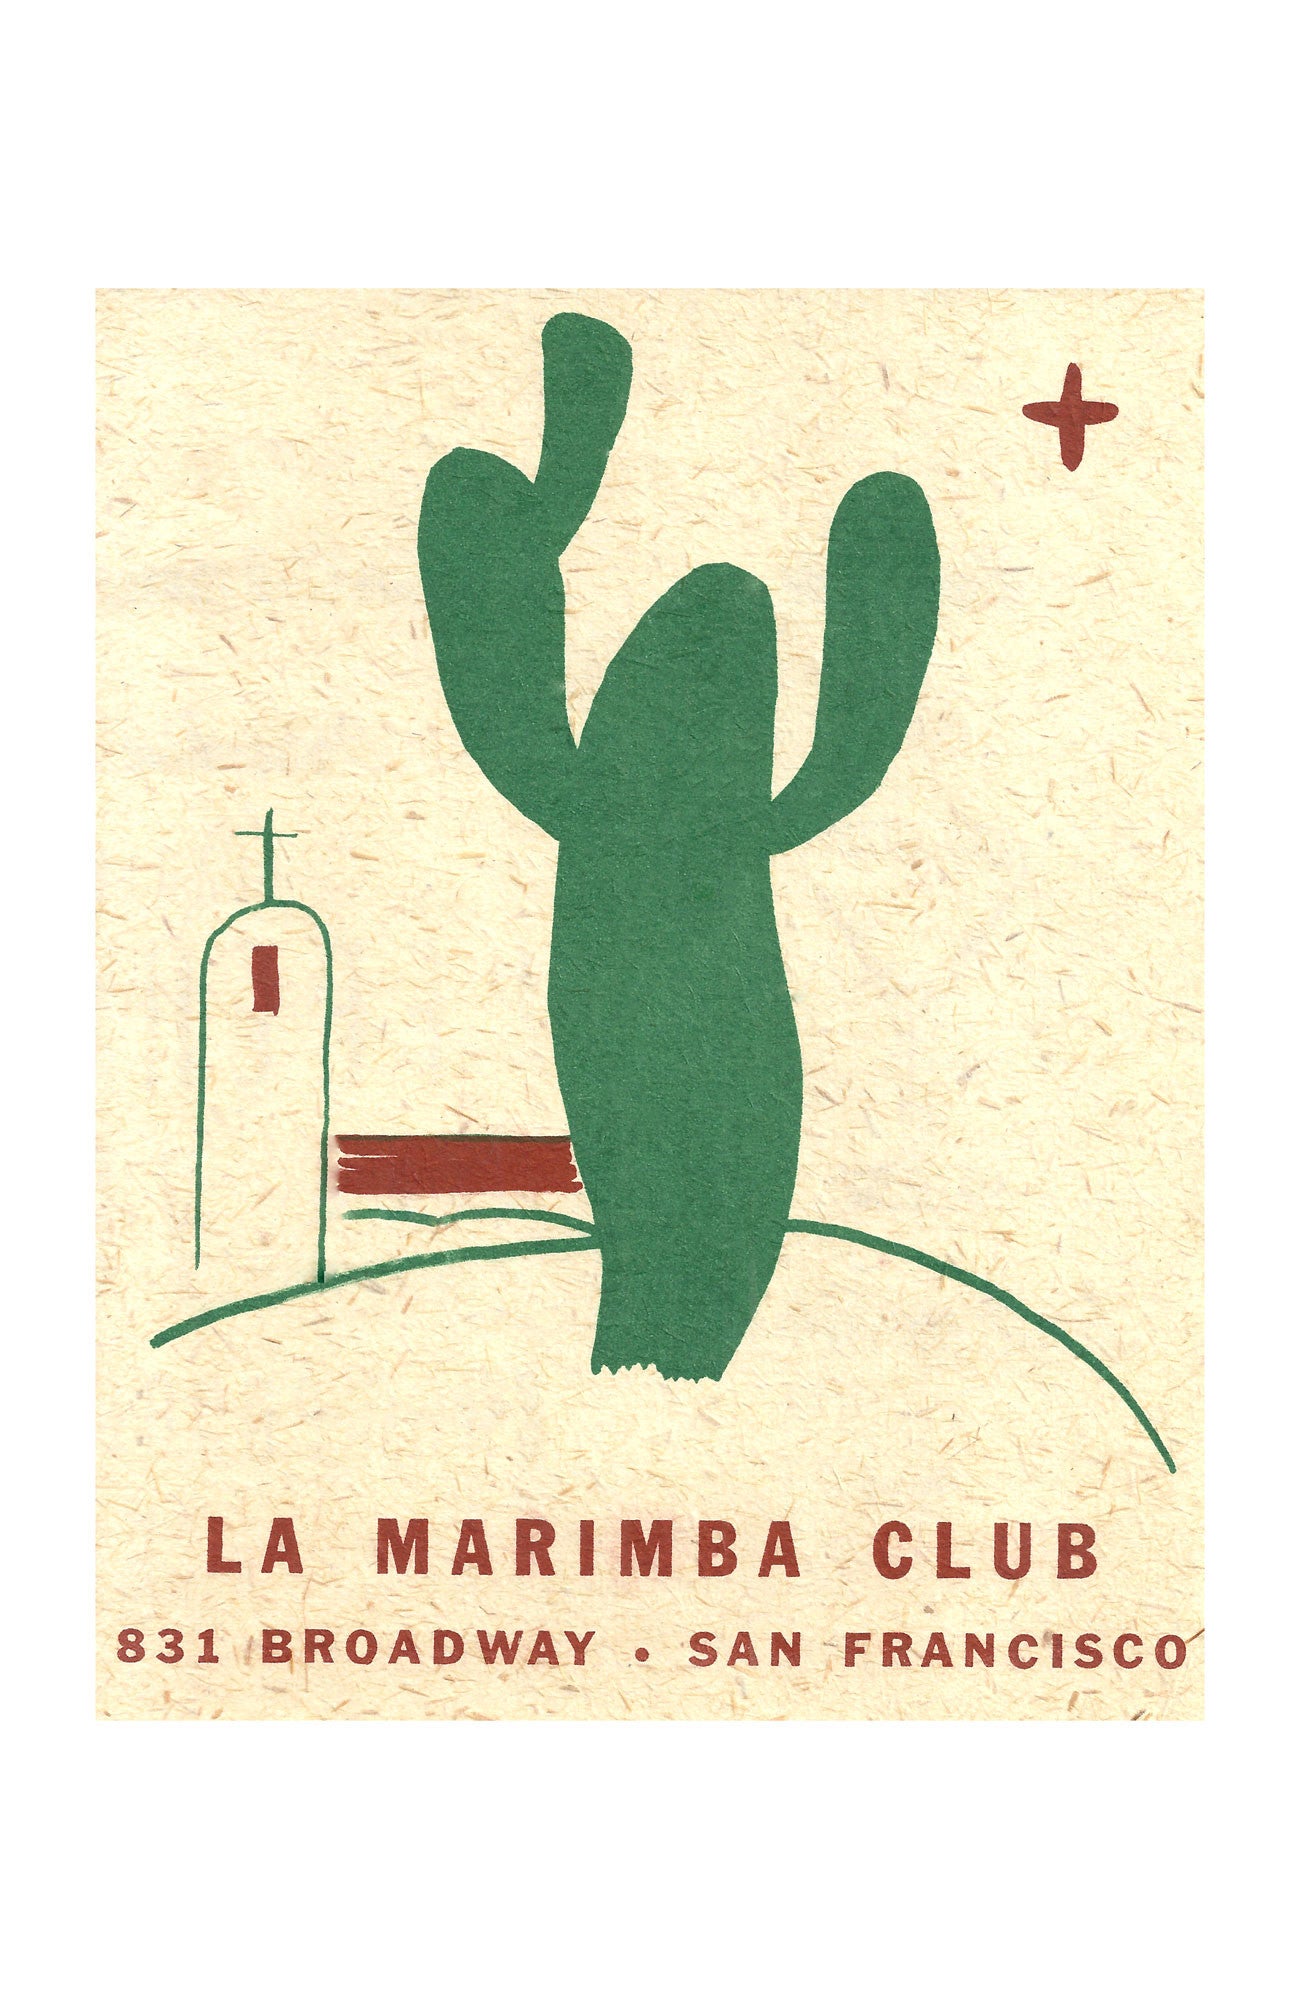 La Marimba Club, San Francisco 1930s menu art